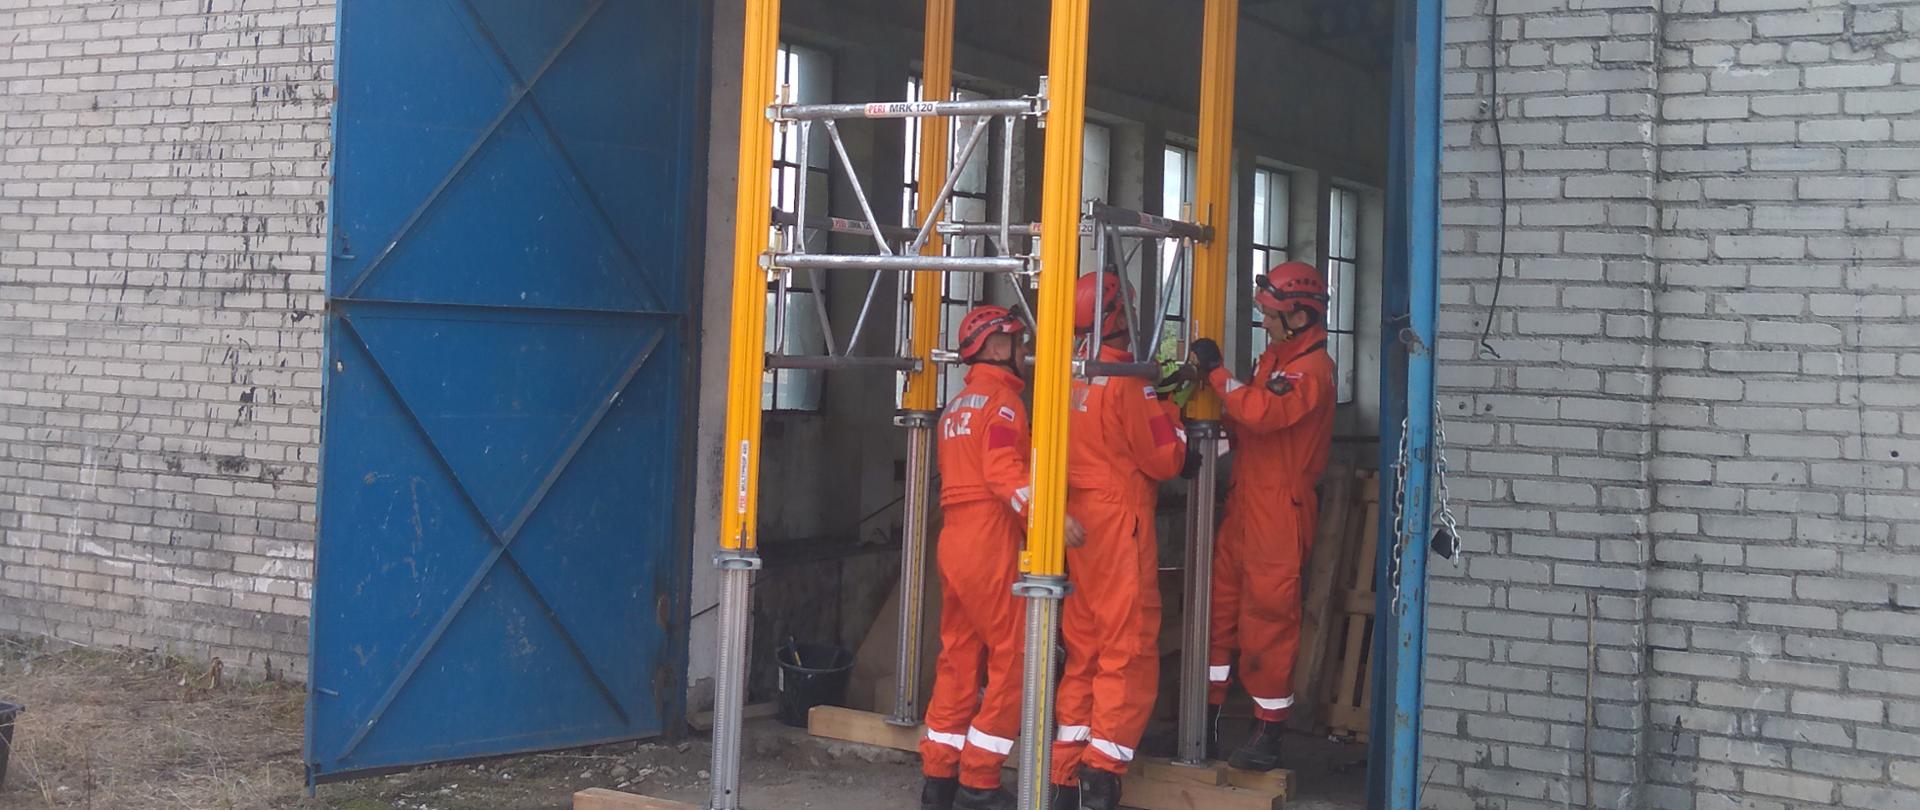 Trzech ratowników SGPR ŁOMŻA podczas stabilizacji wejścia do budynku podporami metalowymi